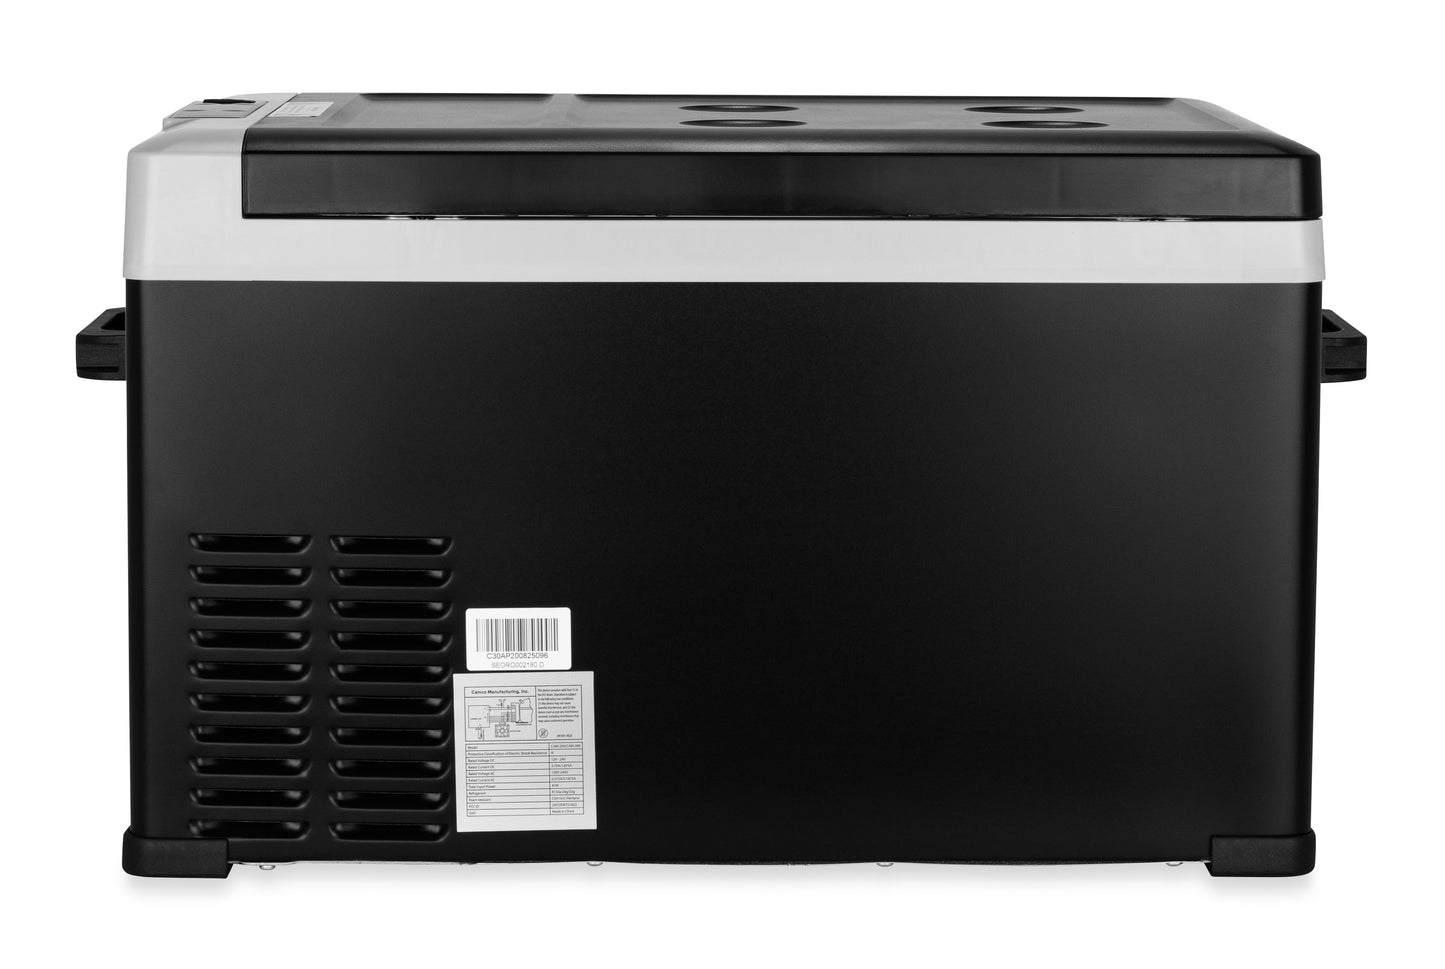 Camco Outdoors CAM-300 Portable Refrigerator - 30 Liter